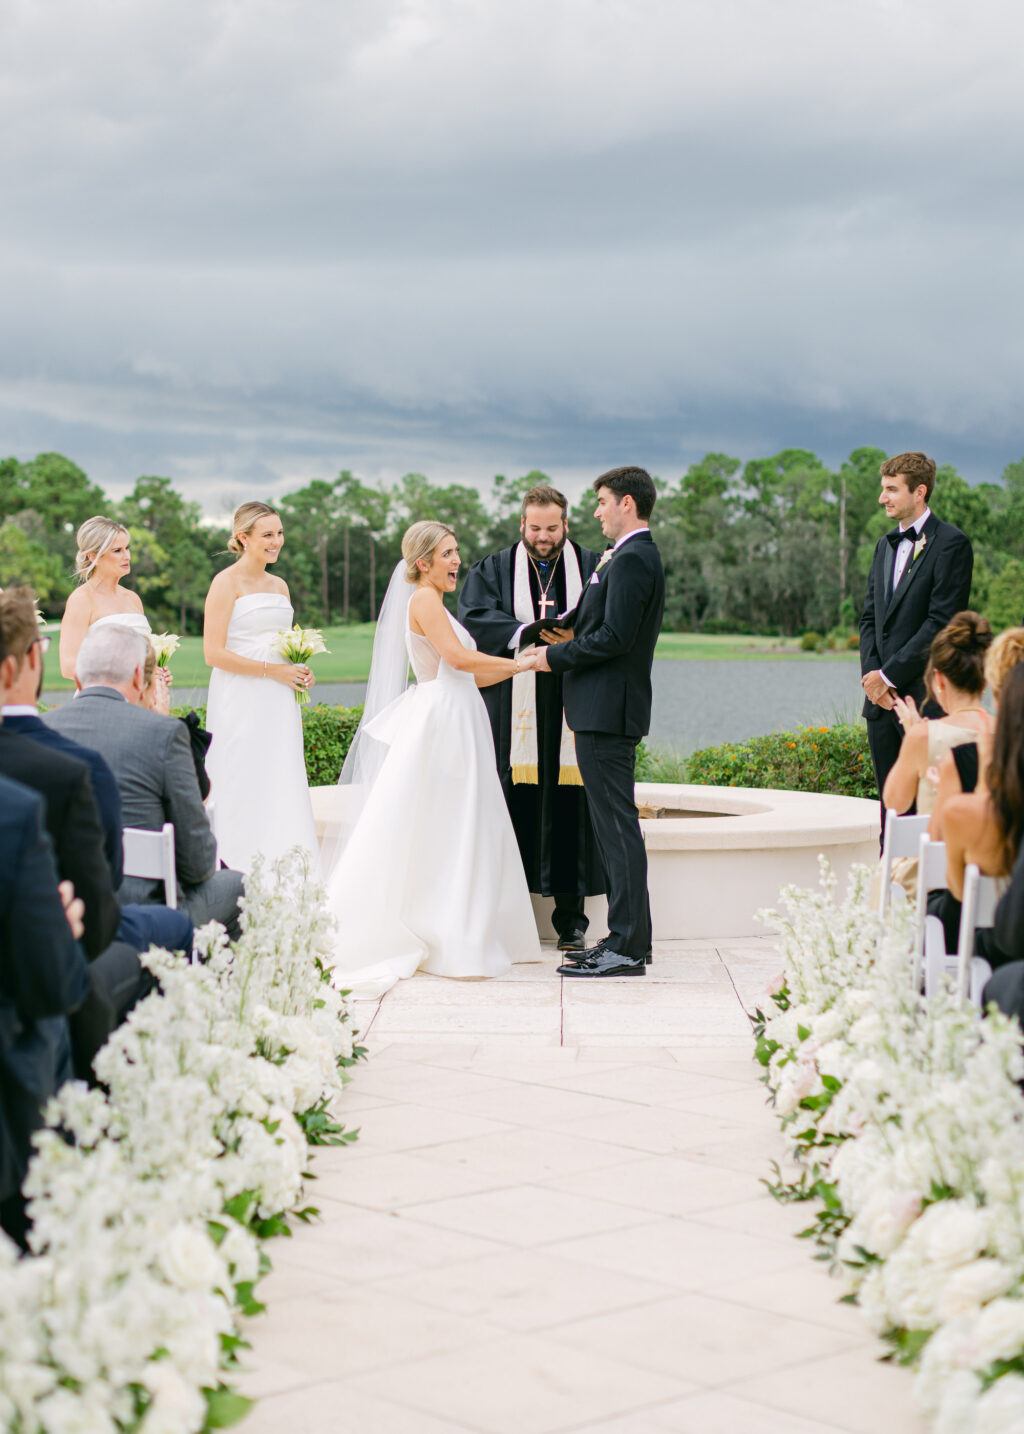 Outdoor Golf Course Wedding Ceremony | Sarasota Venue The Concession Golf Club